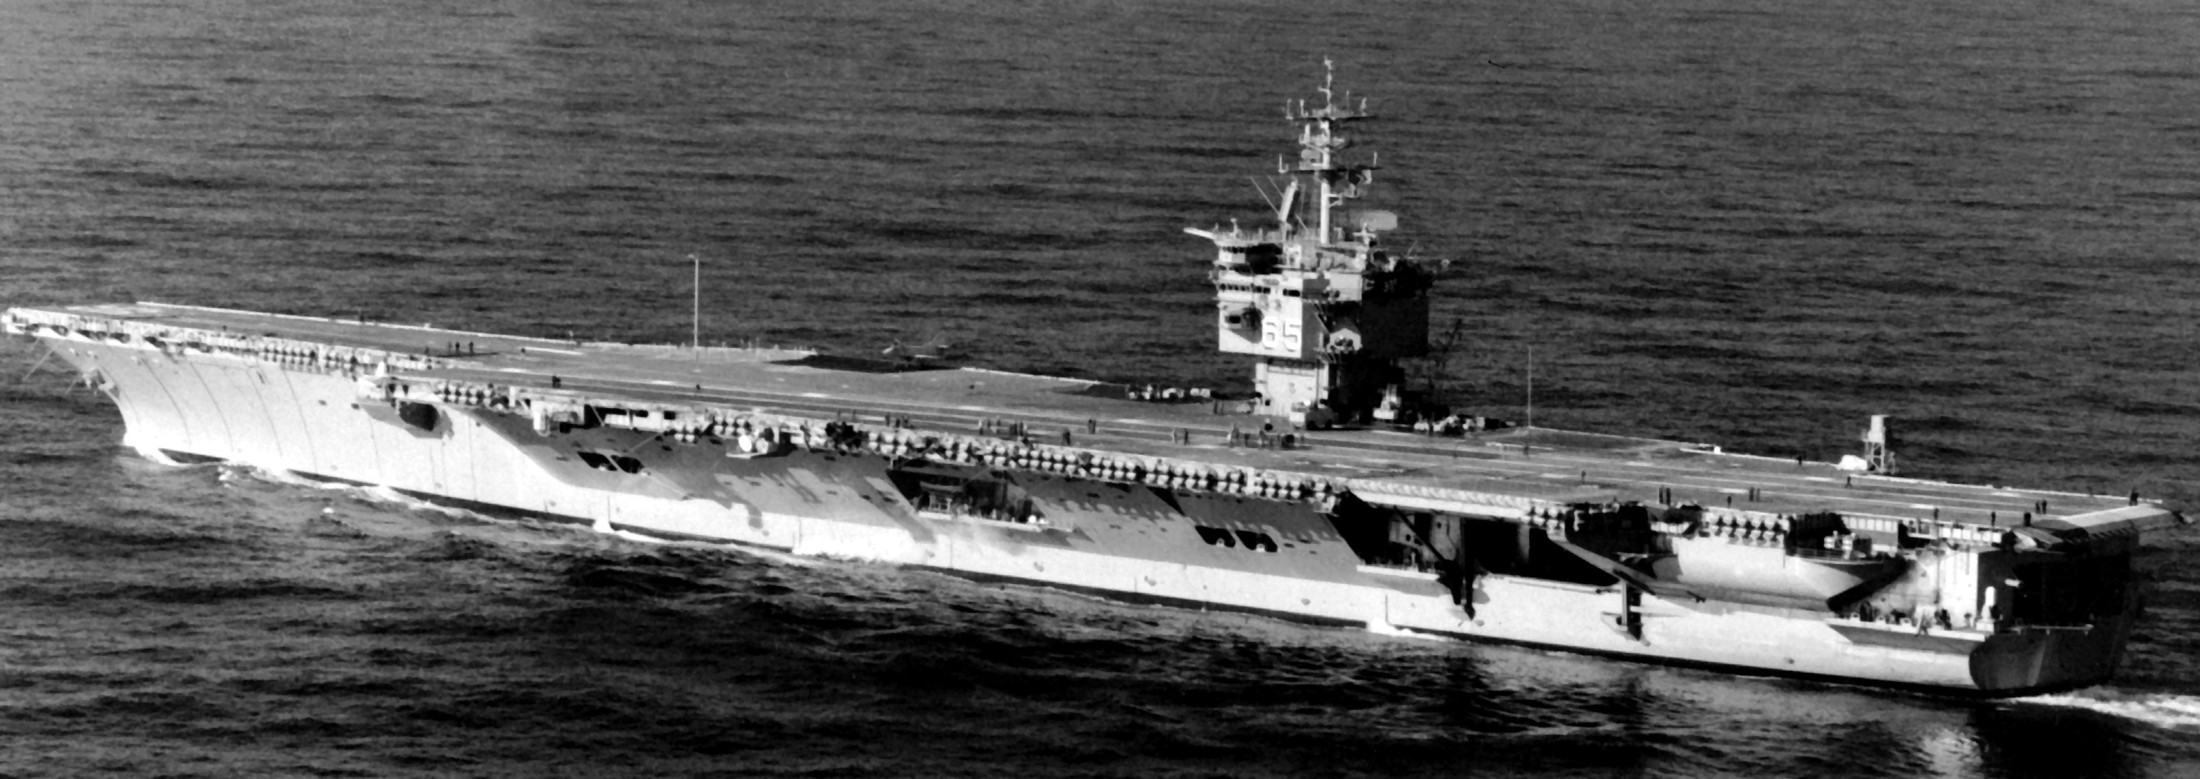 cvn-65 uss enterprise aircraft carrier us navy 151